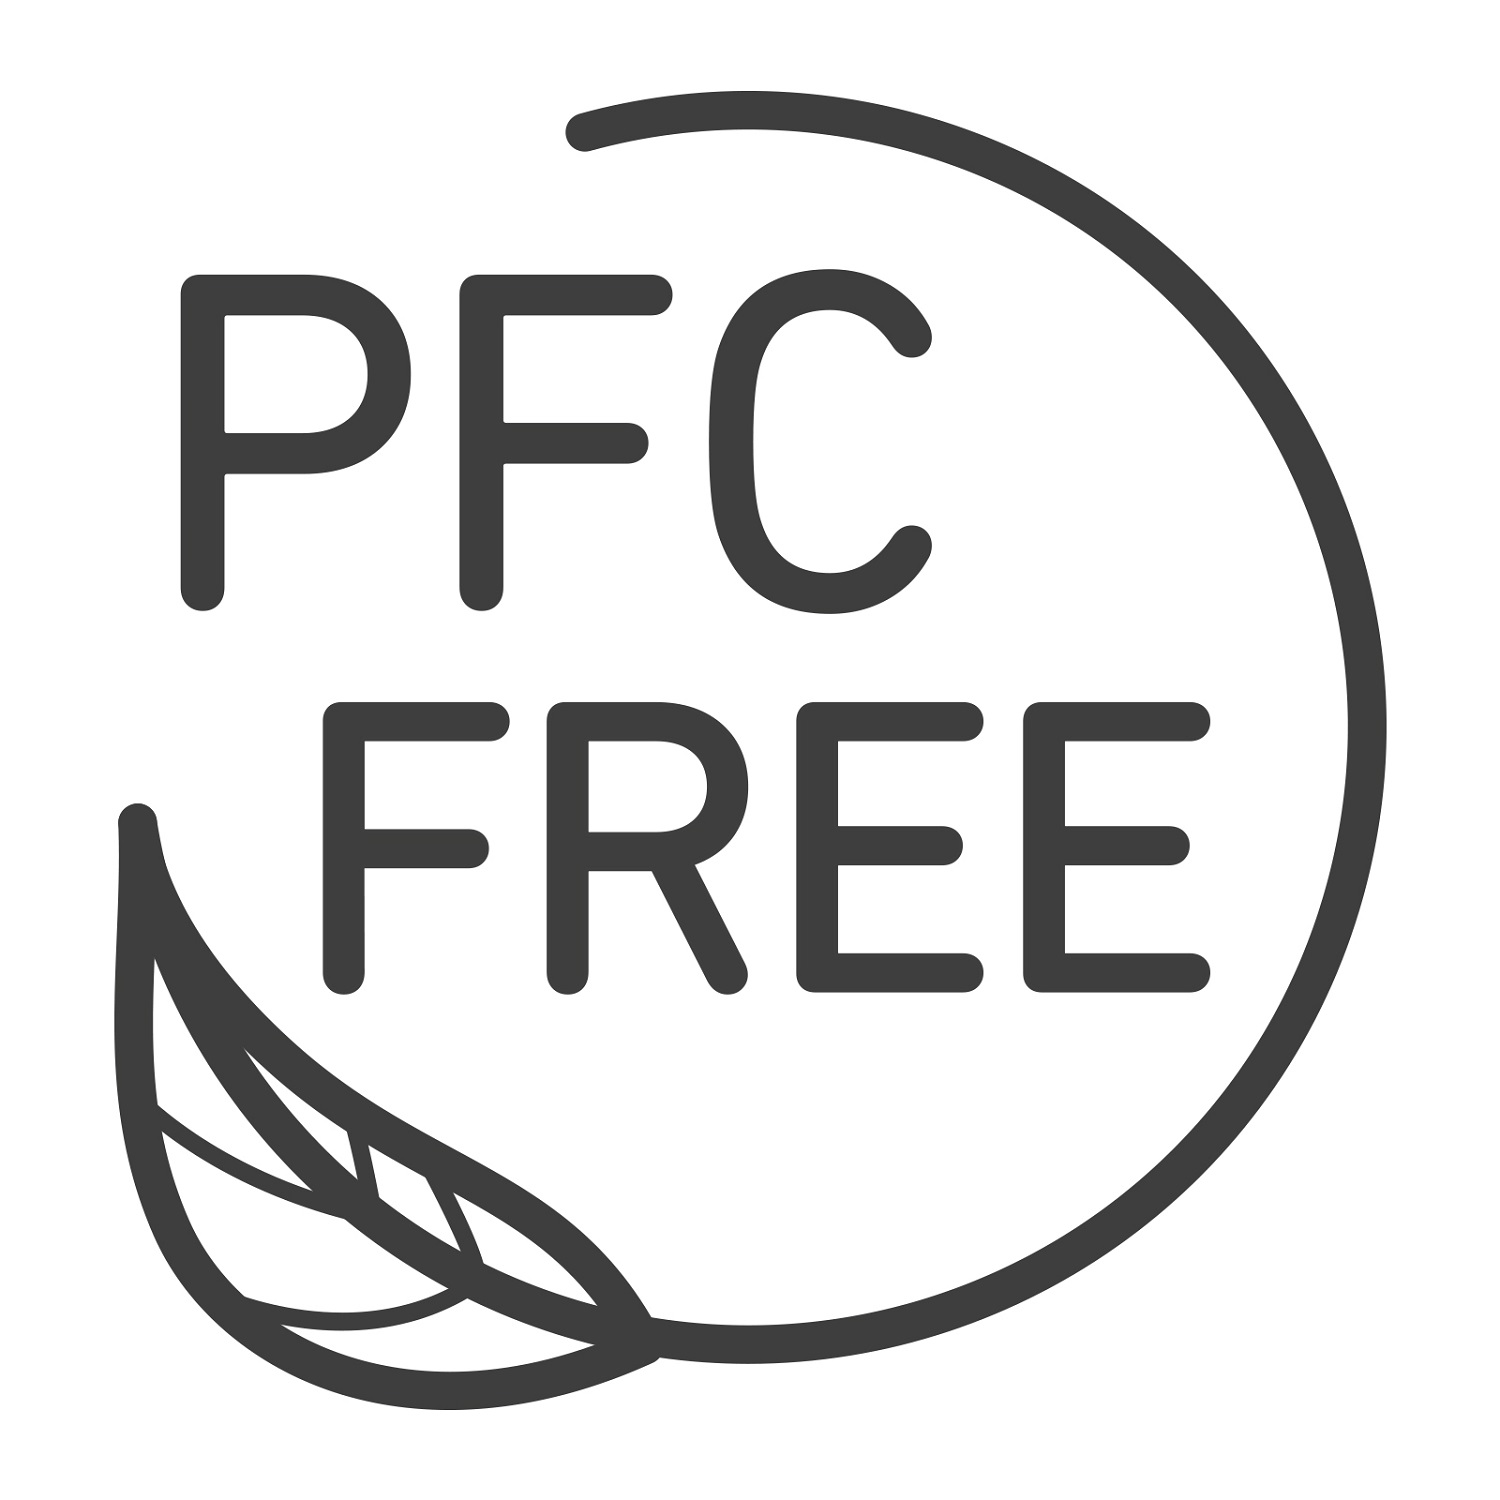 PFC FREE